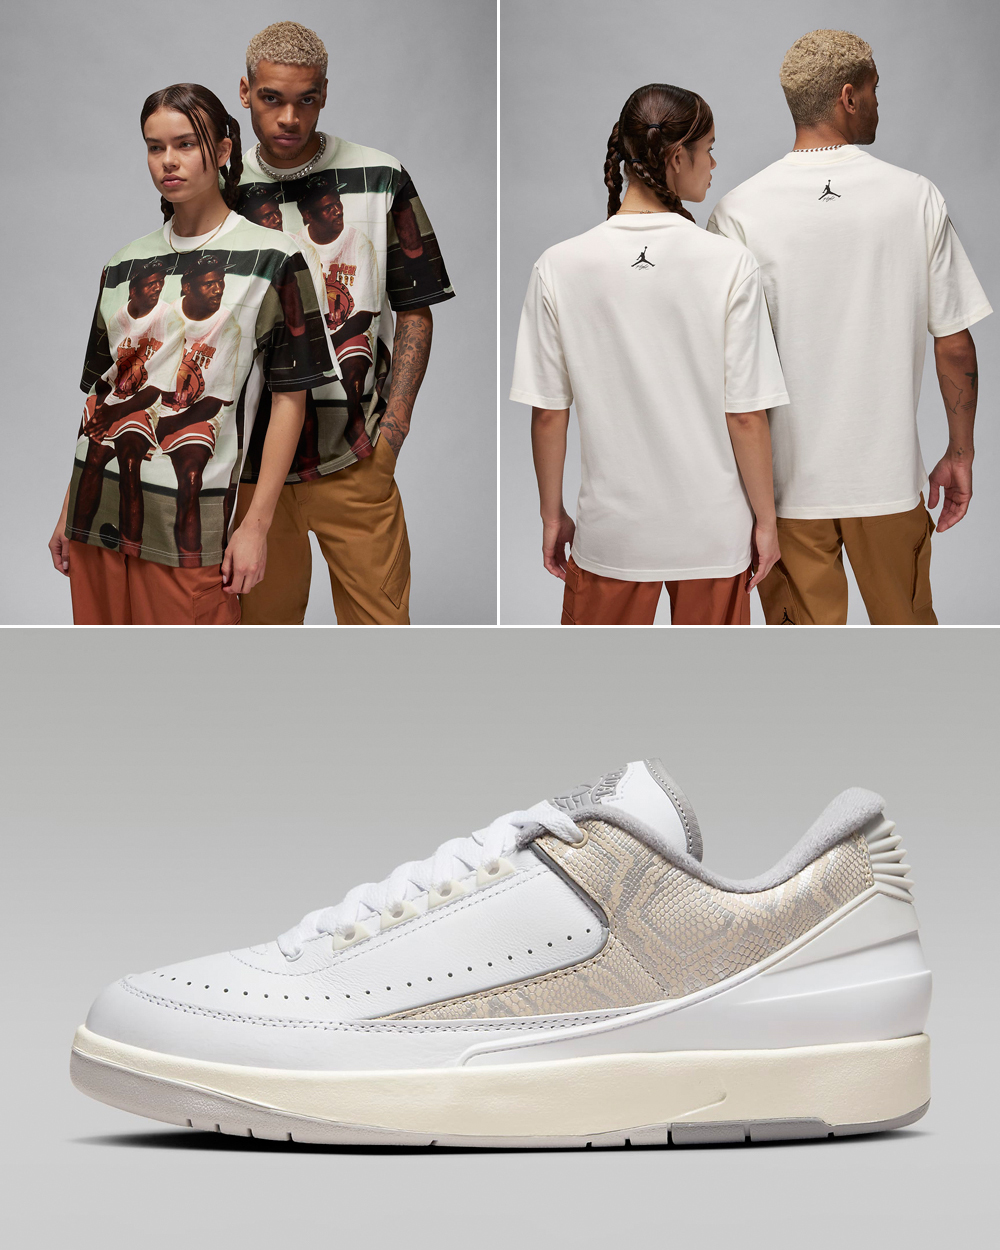 Air-Jordan-2-Low-Python-Shirt-Matching-Outfit